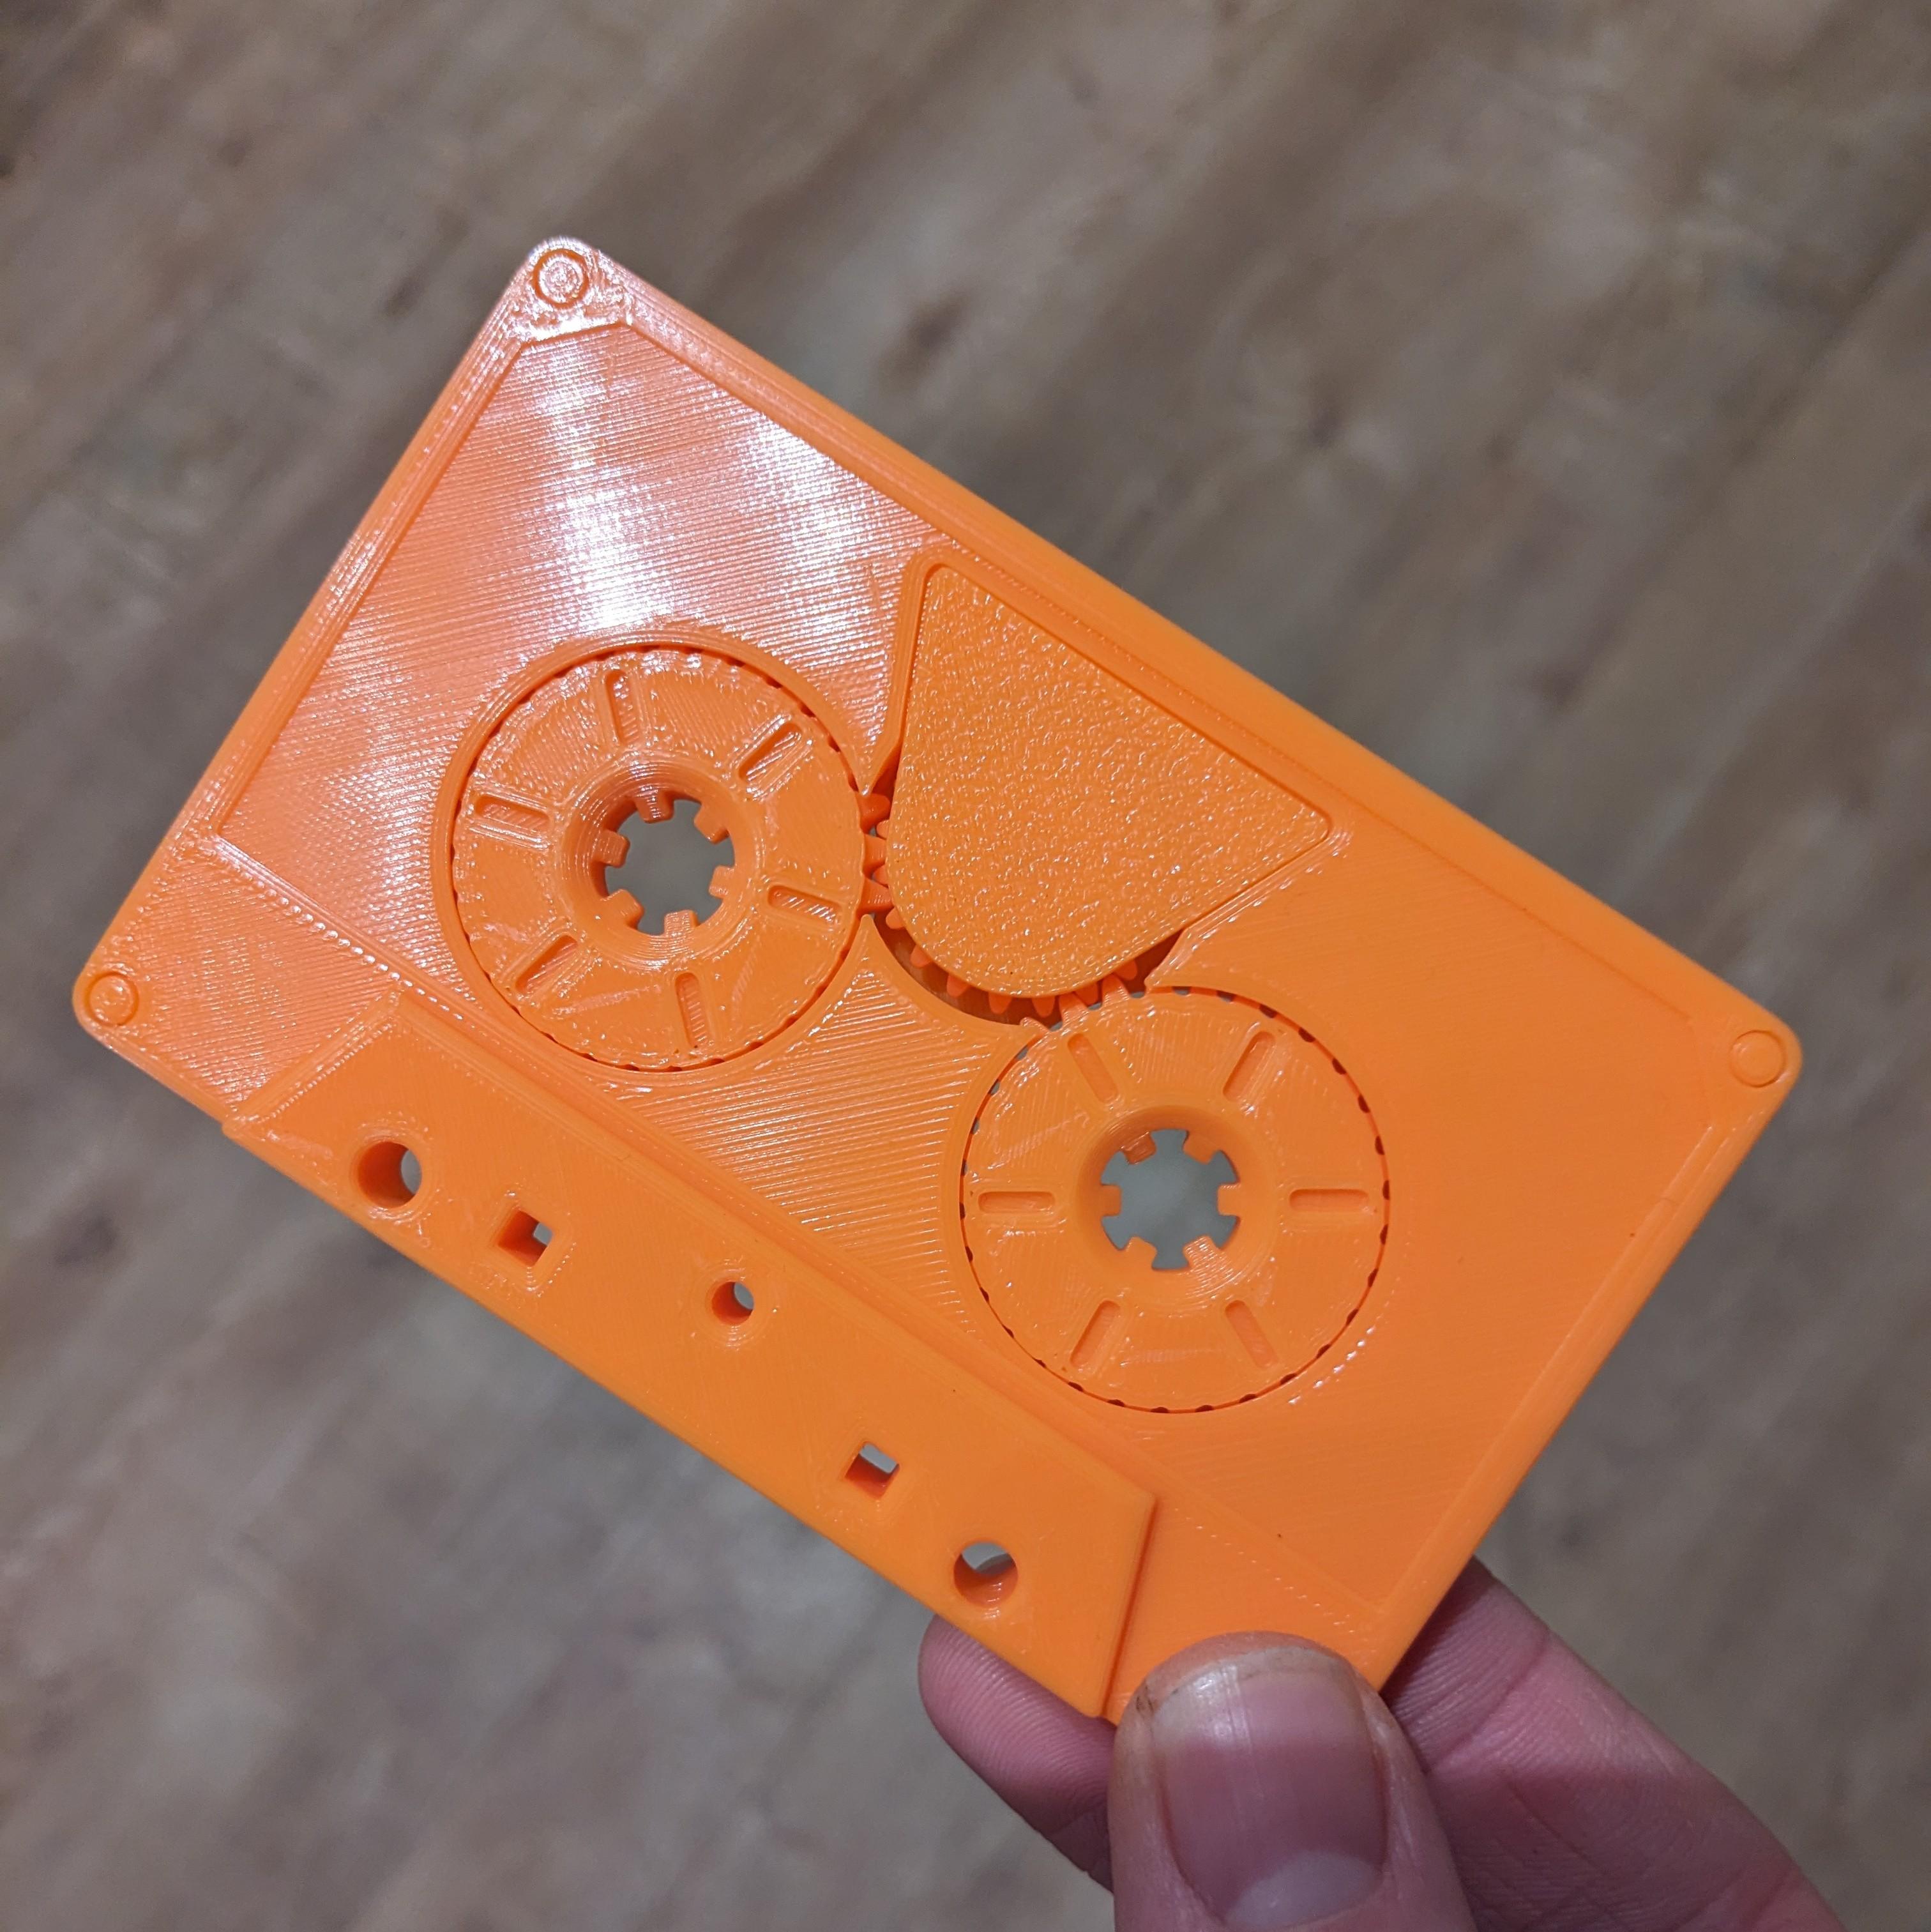 Cassette Tape - Fidget / Print in Place 3d model